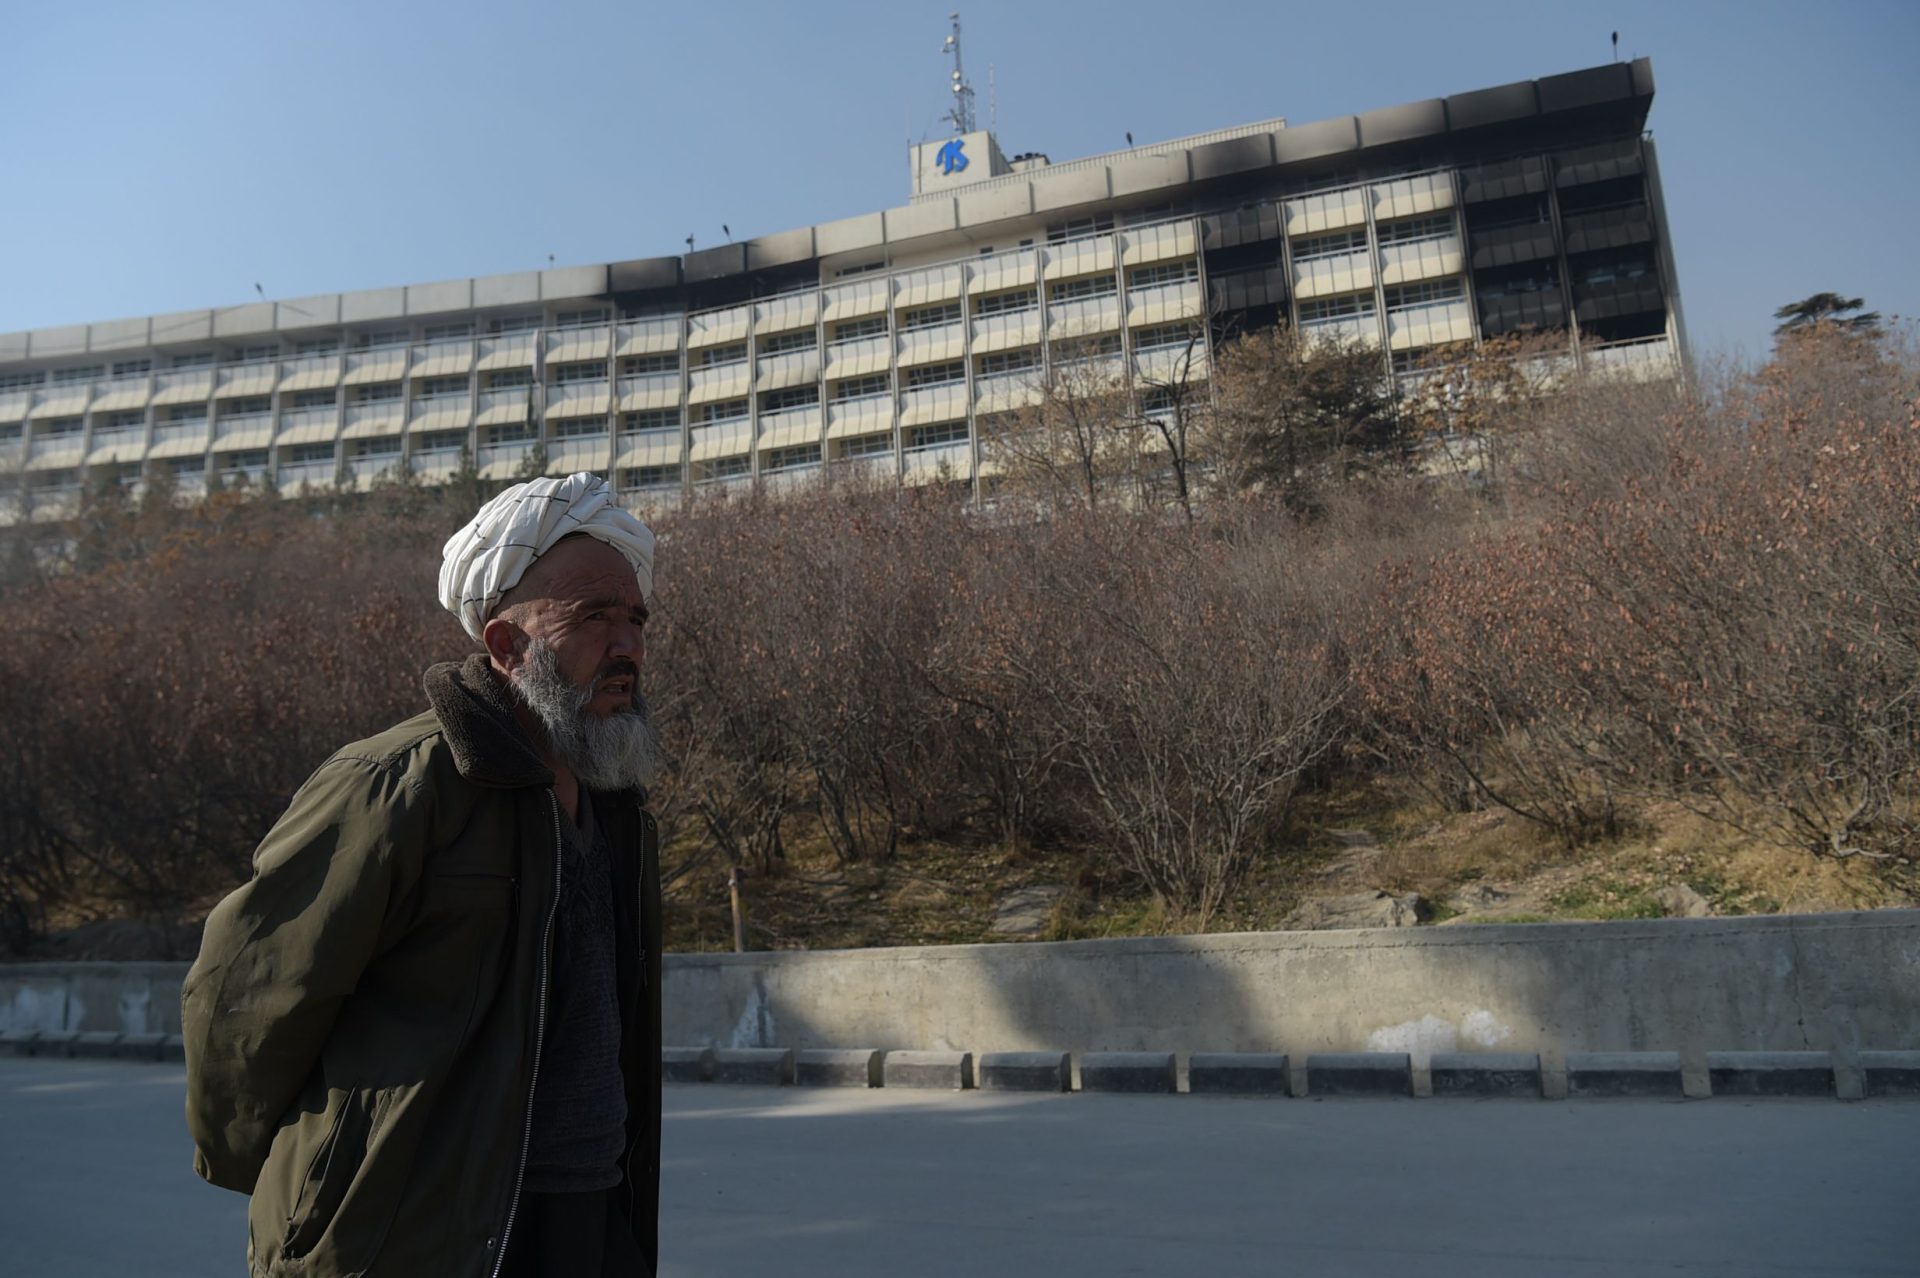 Cabul. Retirados pelo menos 22 corpos de hotel alvo de ataque